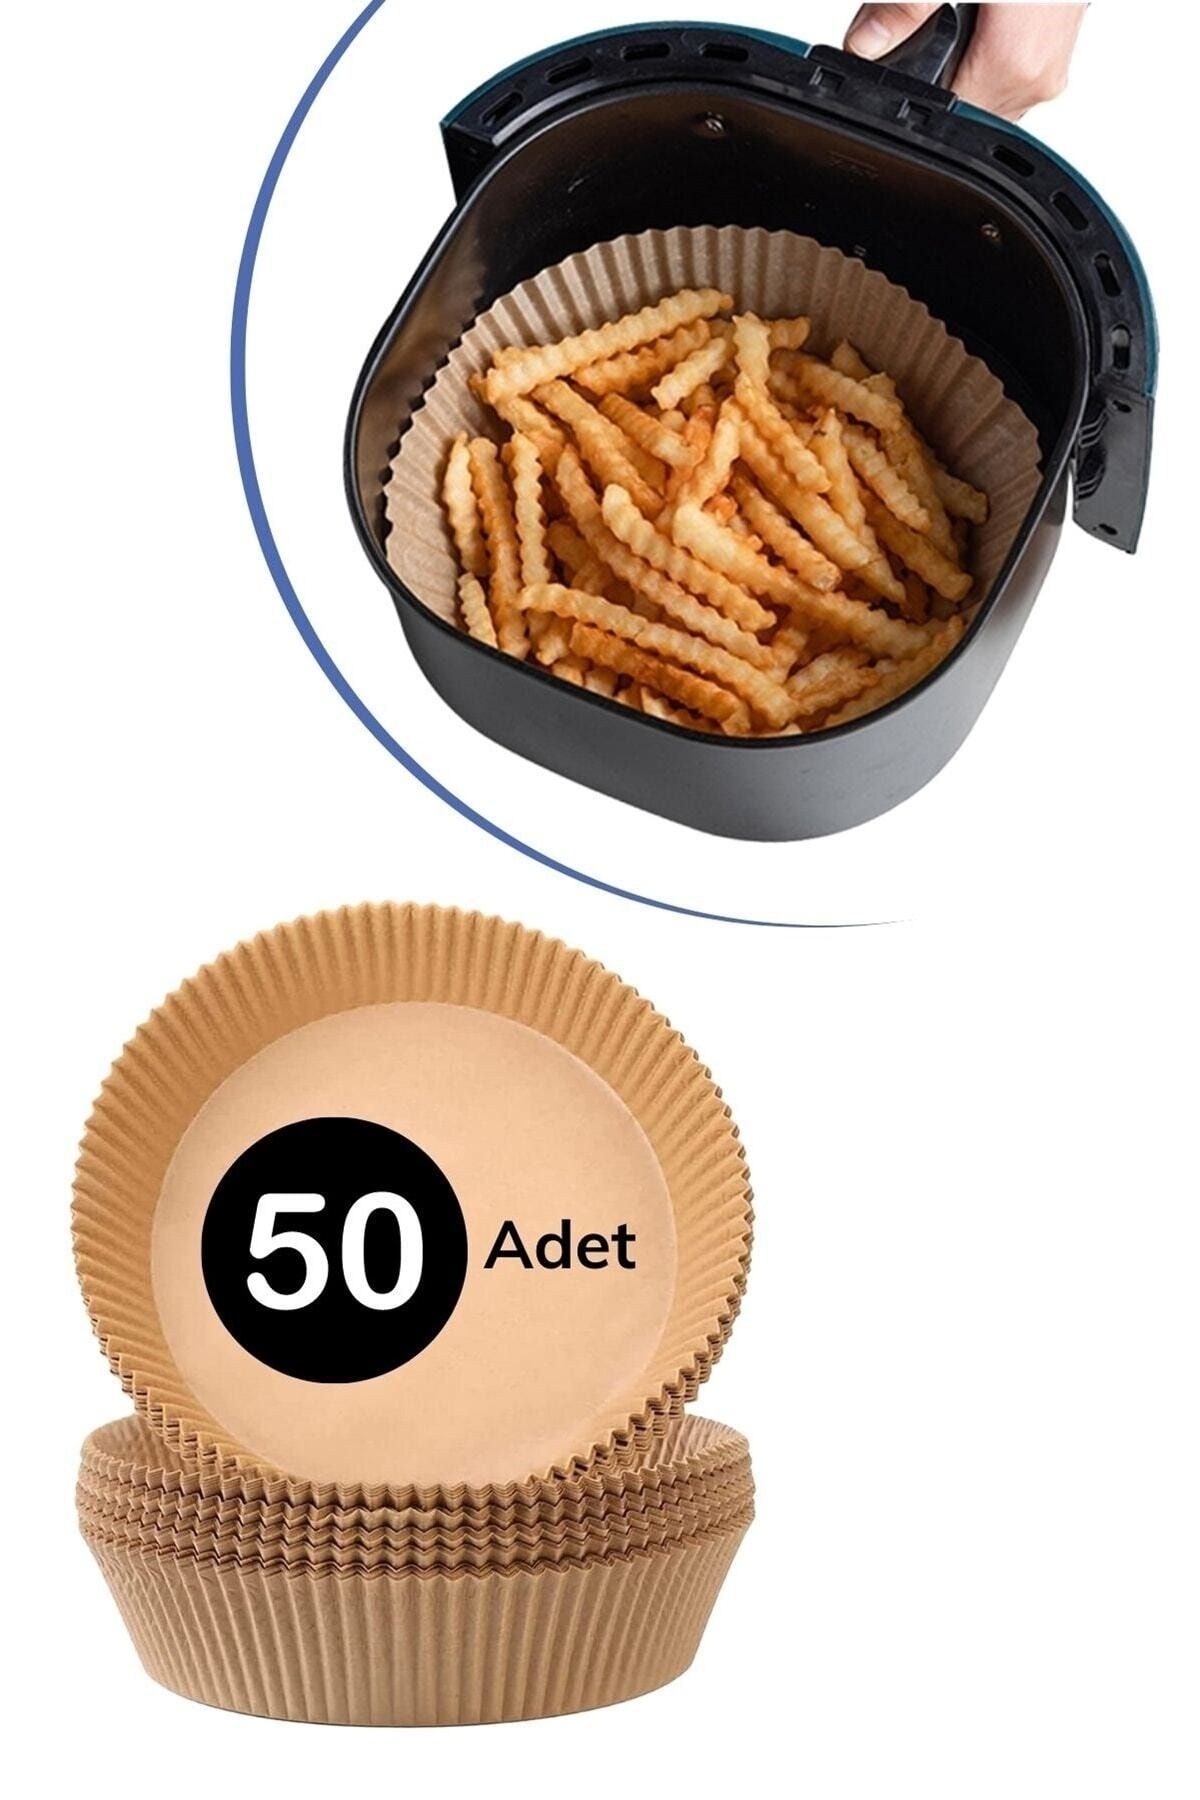 MUTLUHOME 50 Adet Air Fryer Pişirme Kağıdı Tek Kullanımlık Hava Fritöz Yuvarlak Tabak Model